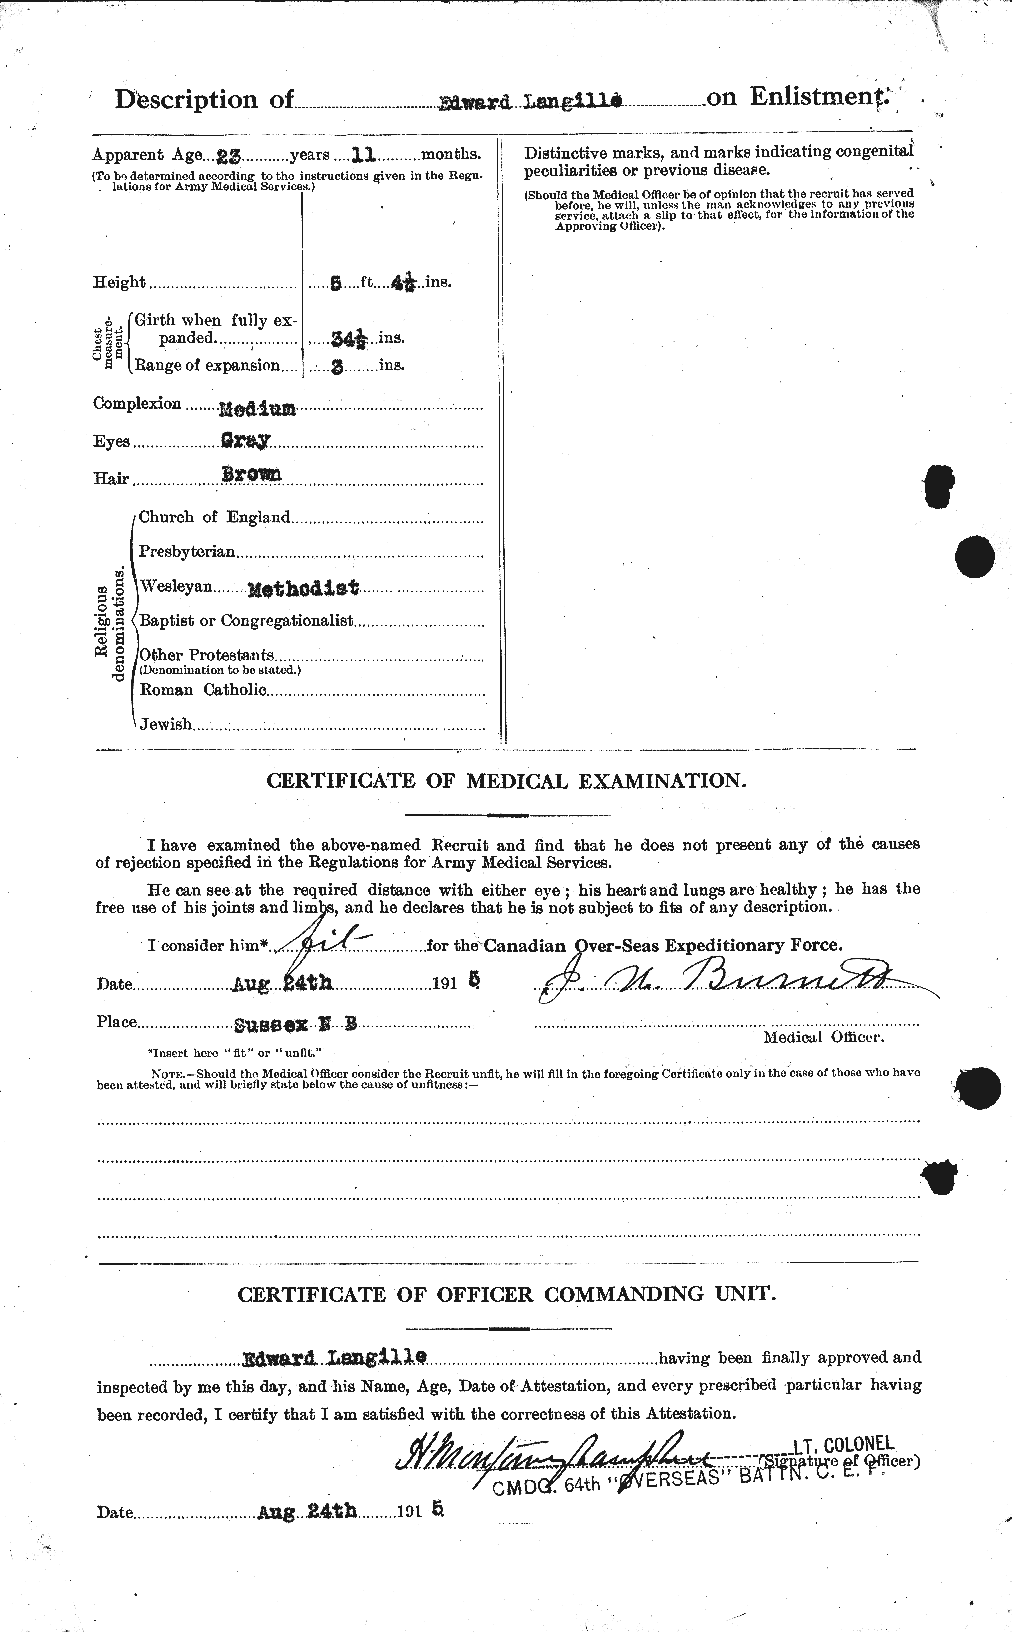 Dossiers du Personnel de la Première Guerre mondiale - CEC 447782b